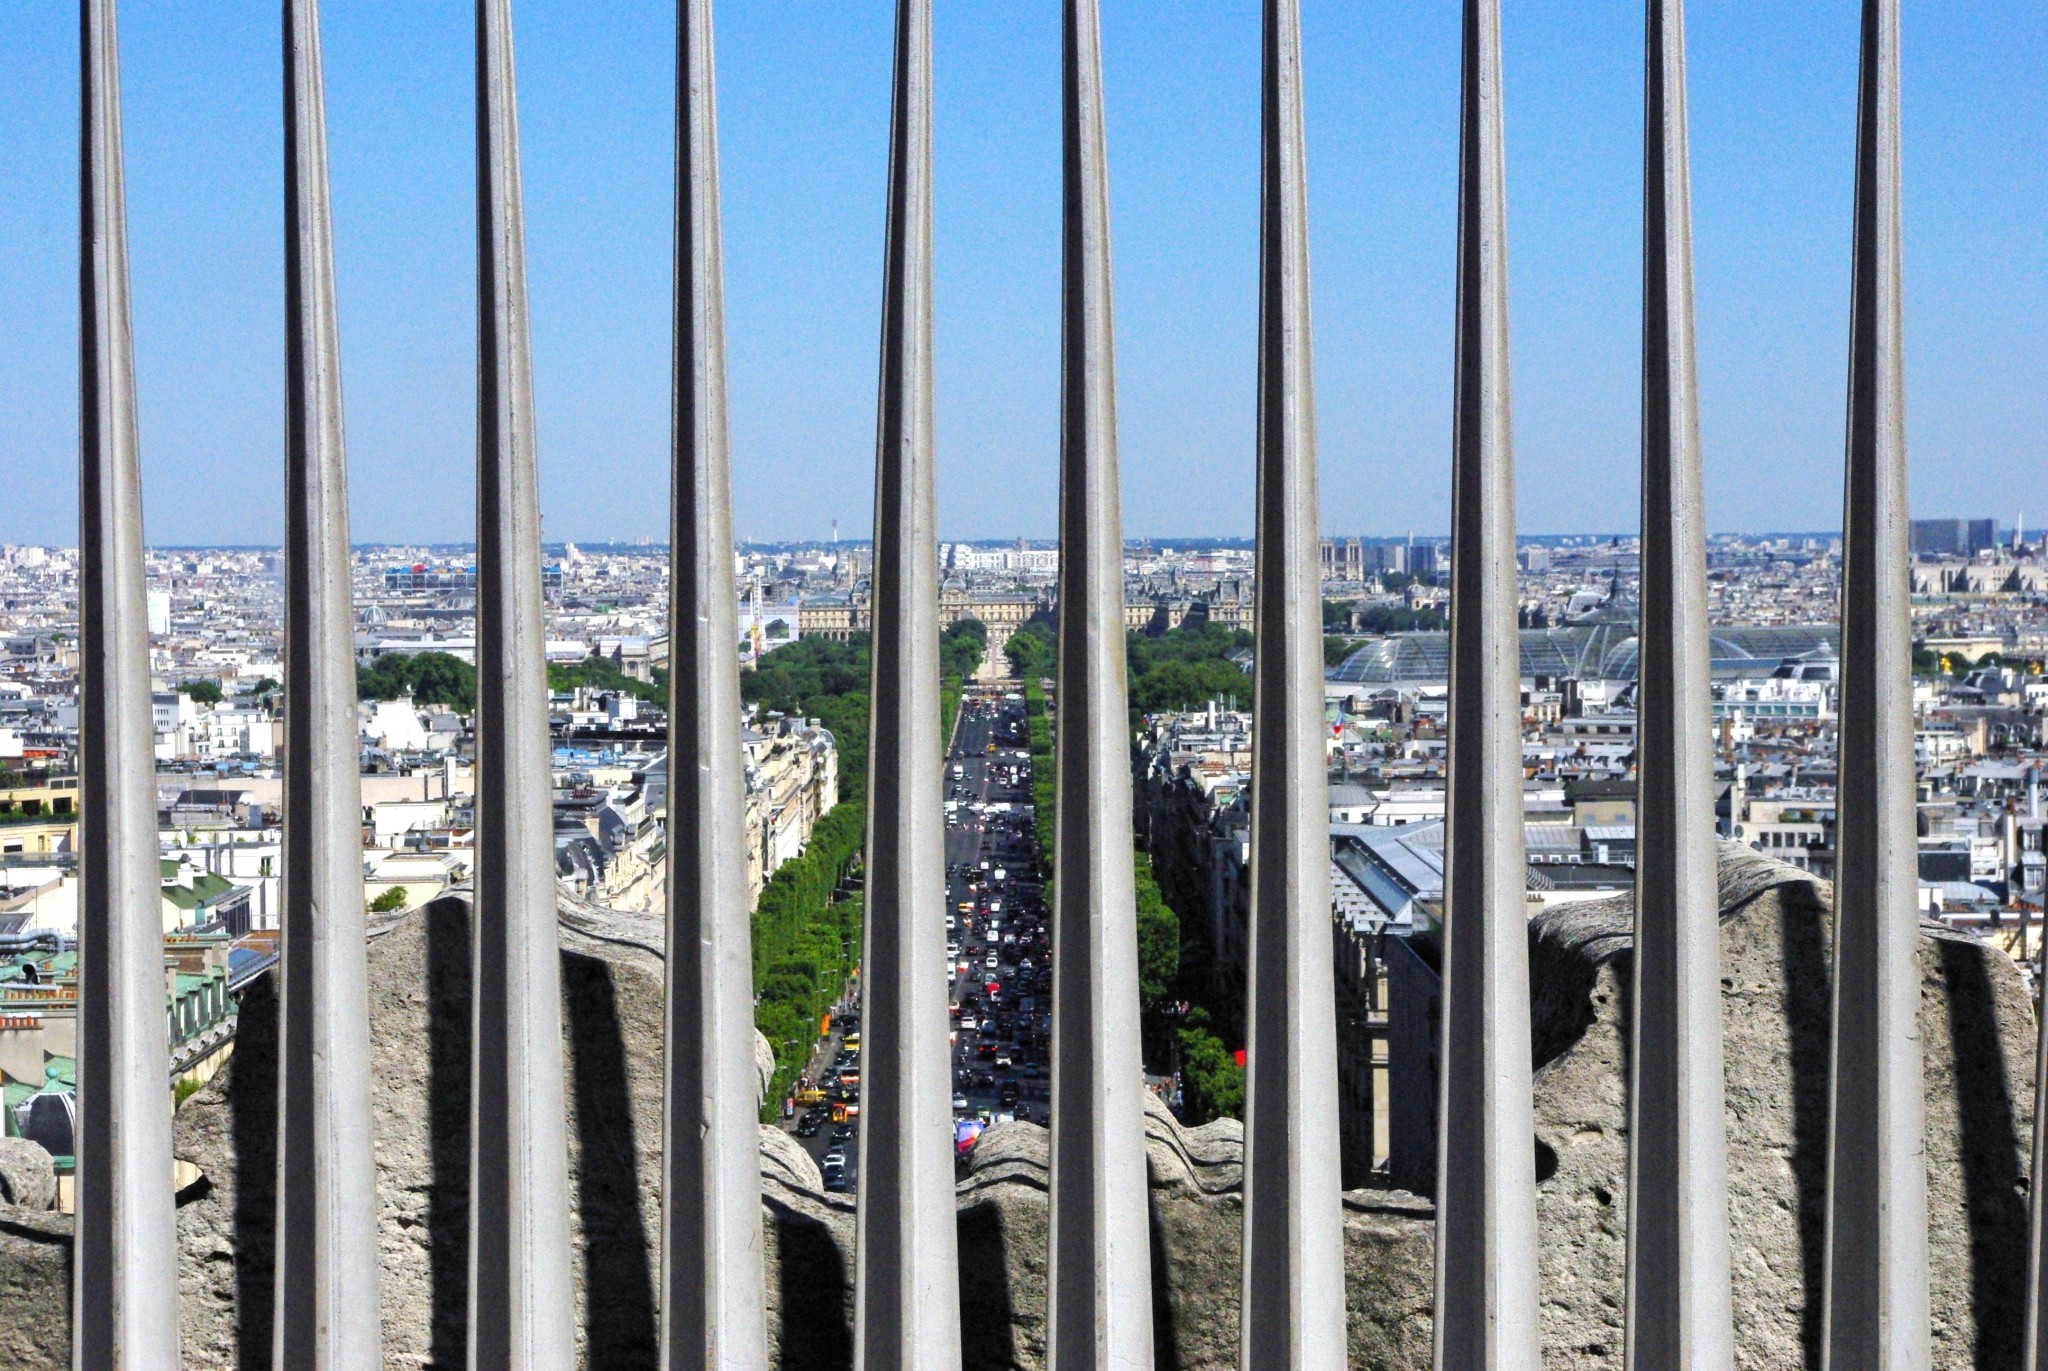 File:Champs-Élysées view from the Arc de Triomphe (35249934170